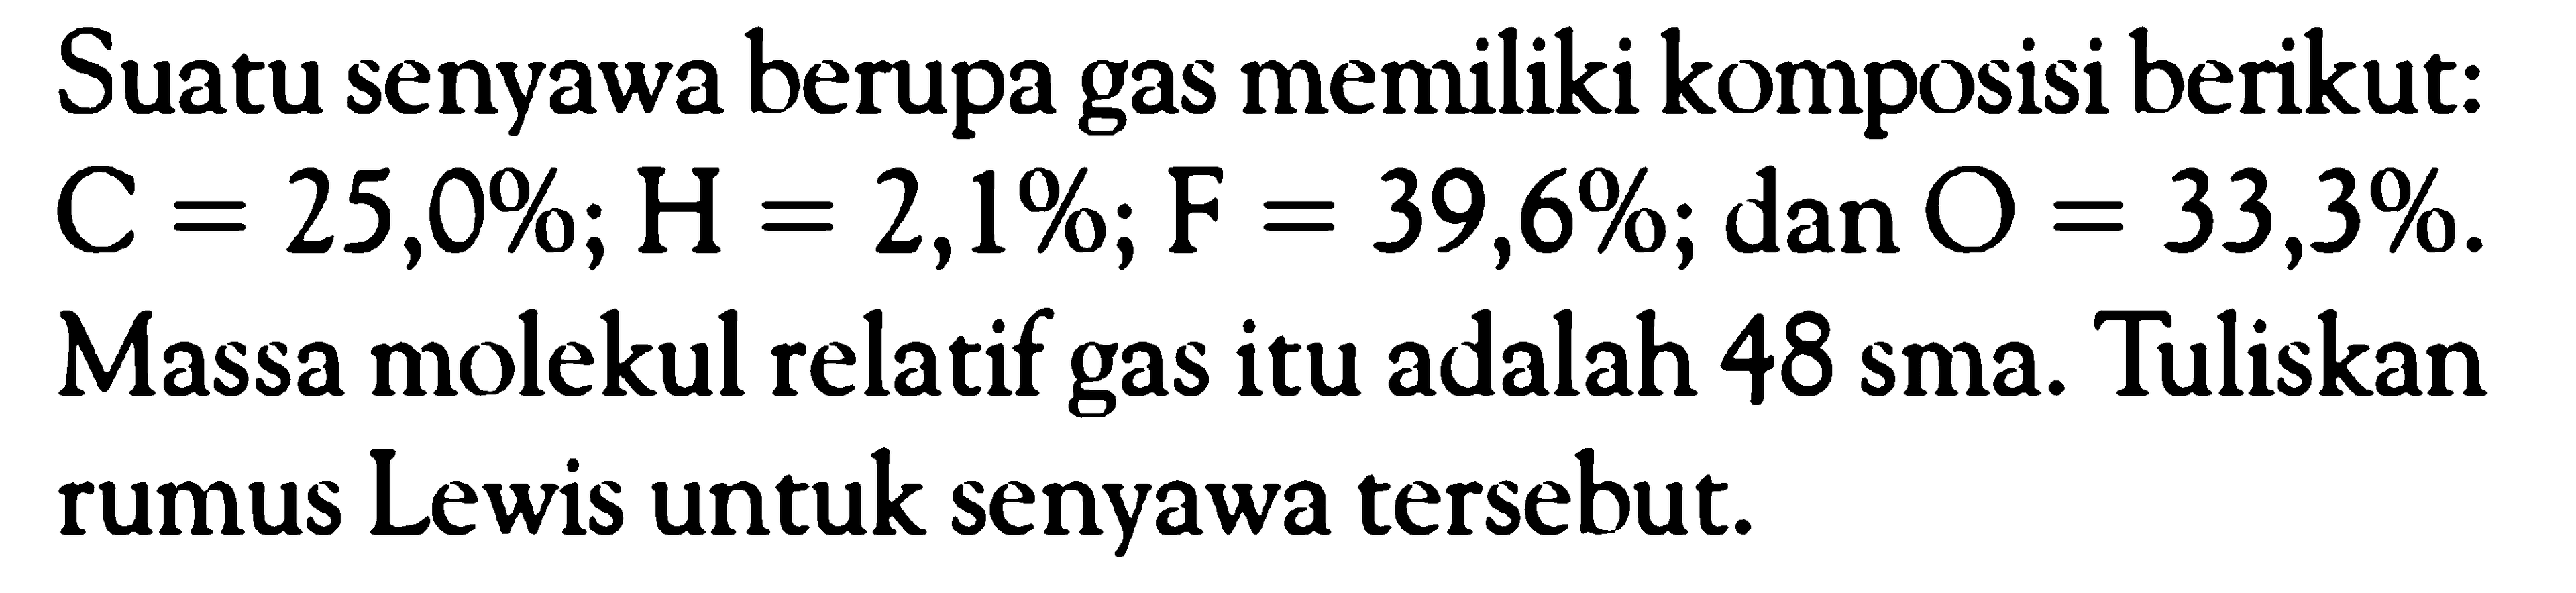 Suatu senyawa berupa gas memiliki komposisi berikut: C = 25,0%; H = 2,1%; F = 39,6%; dan O = 33,3%. Massa molekul relatif gas itu adalah 48 sma. Tuliskan rumus Lewis untuk senyawa tersebut.